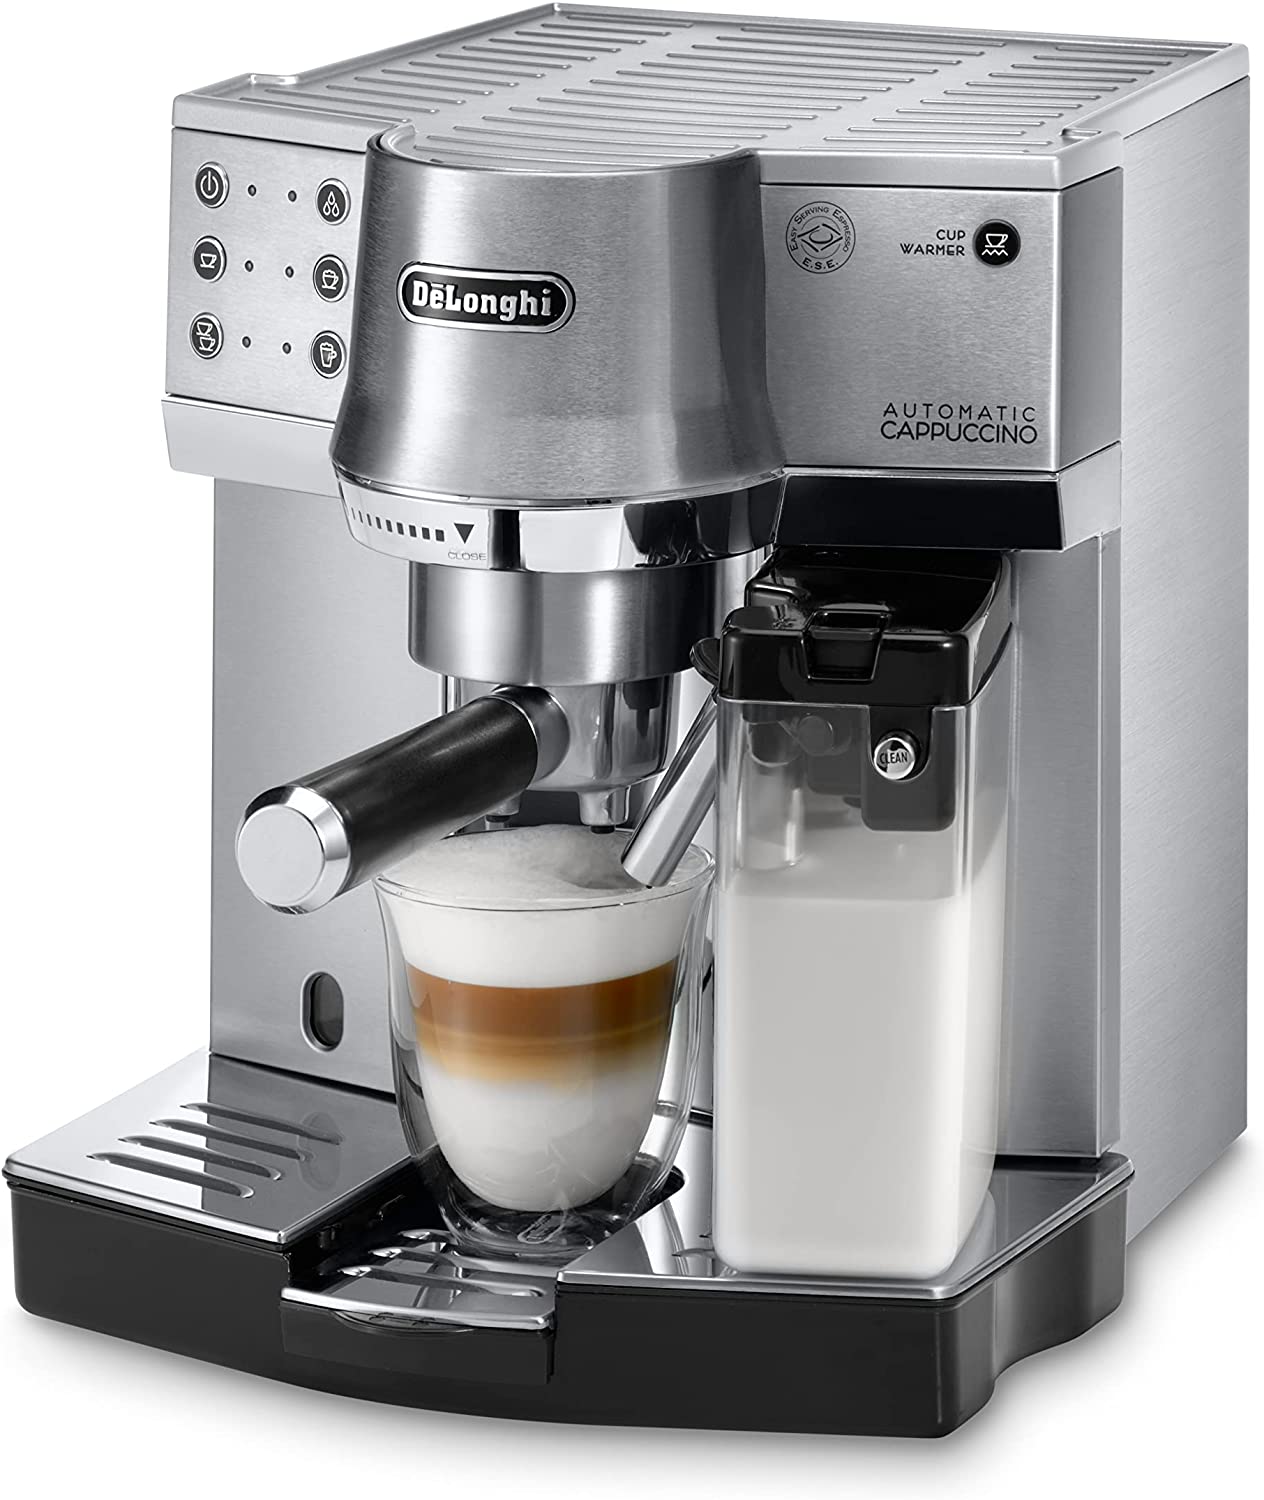 Macchina per caffè DeLonghi espresso EC 860.M argento [EC860.M]